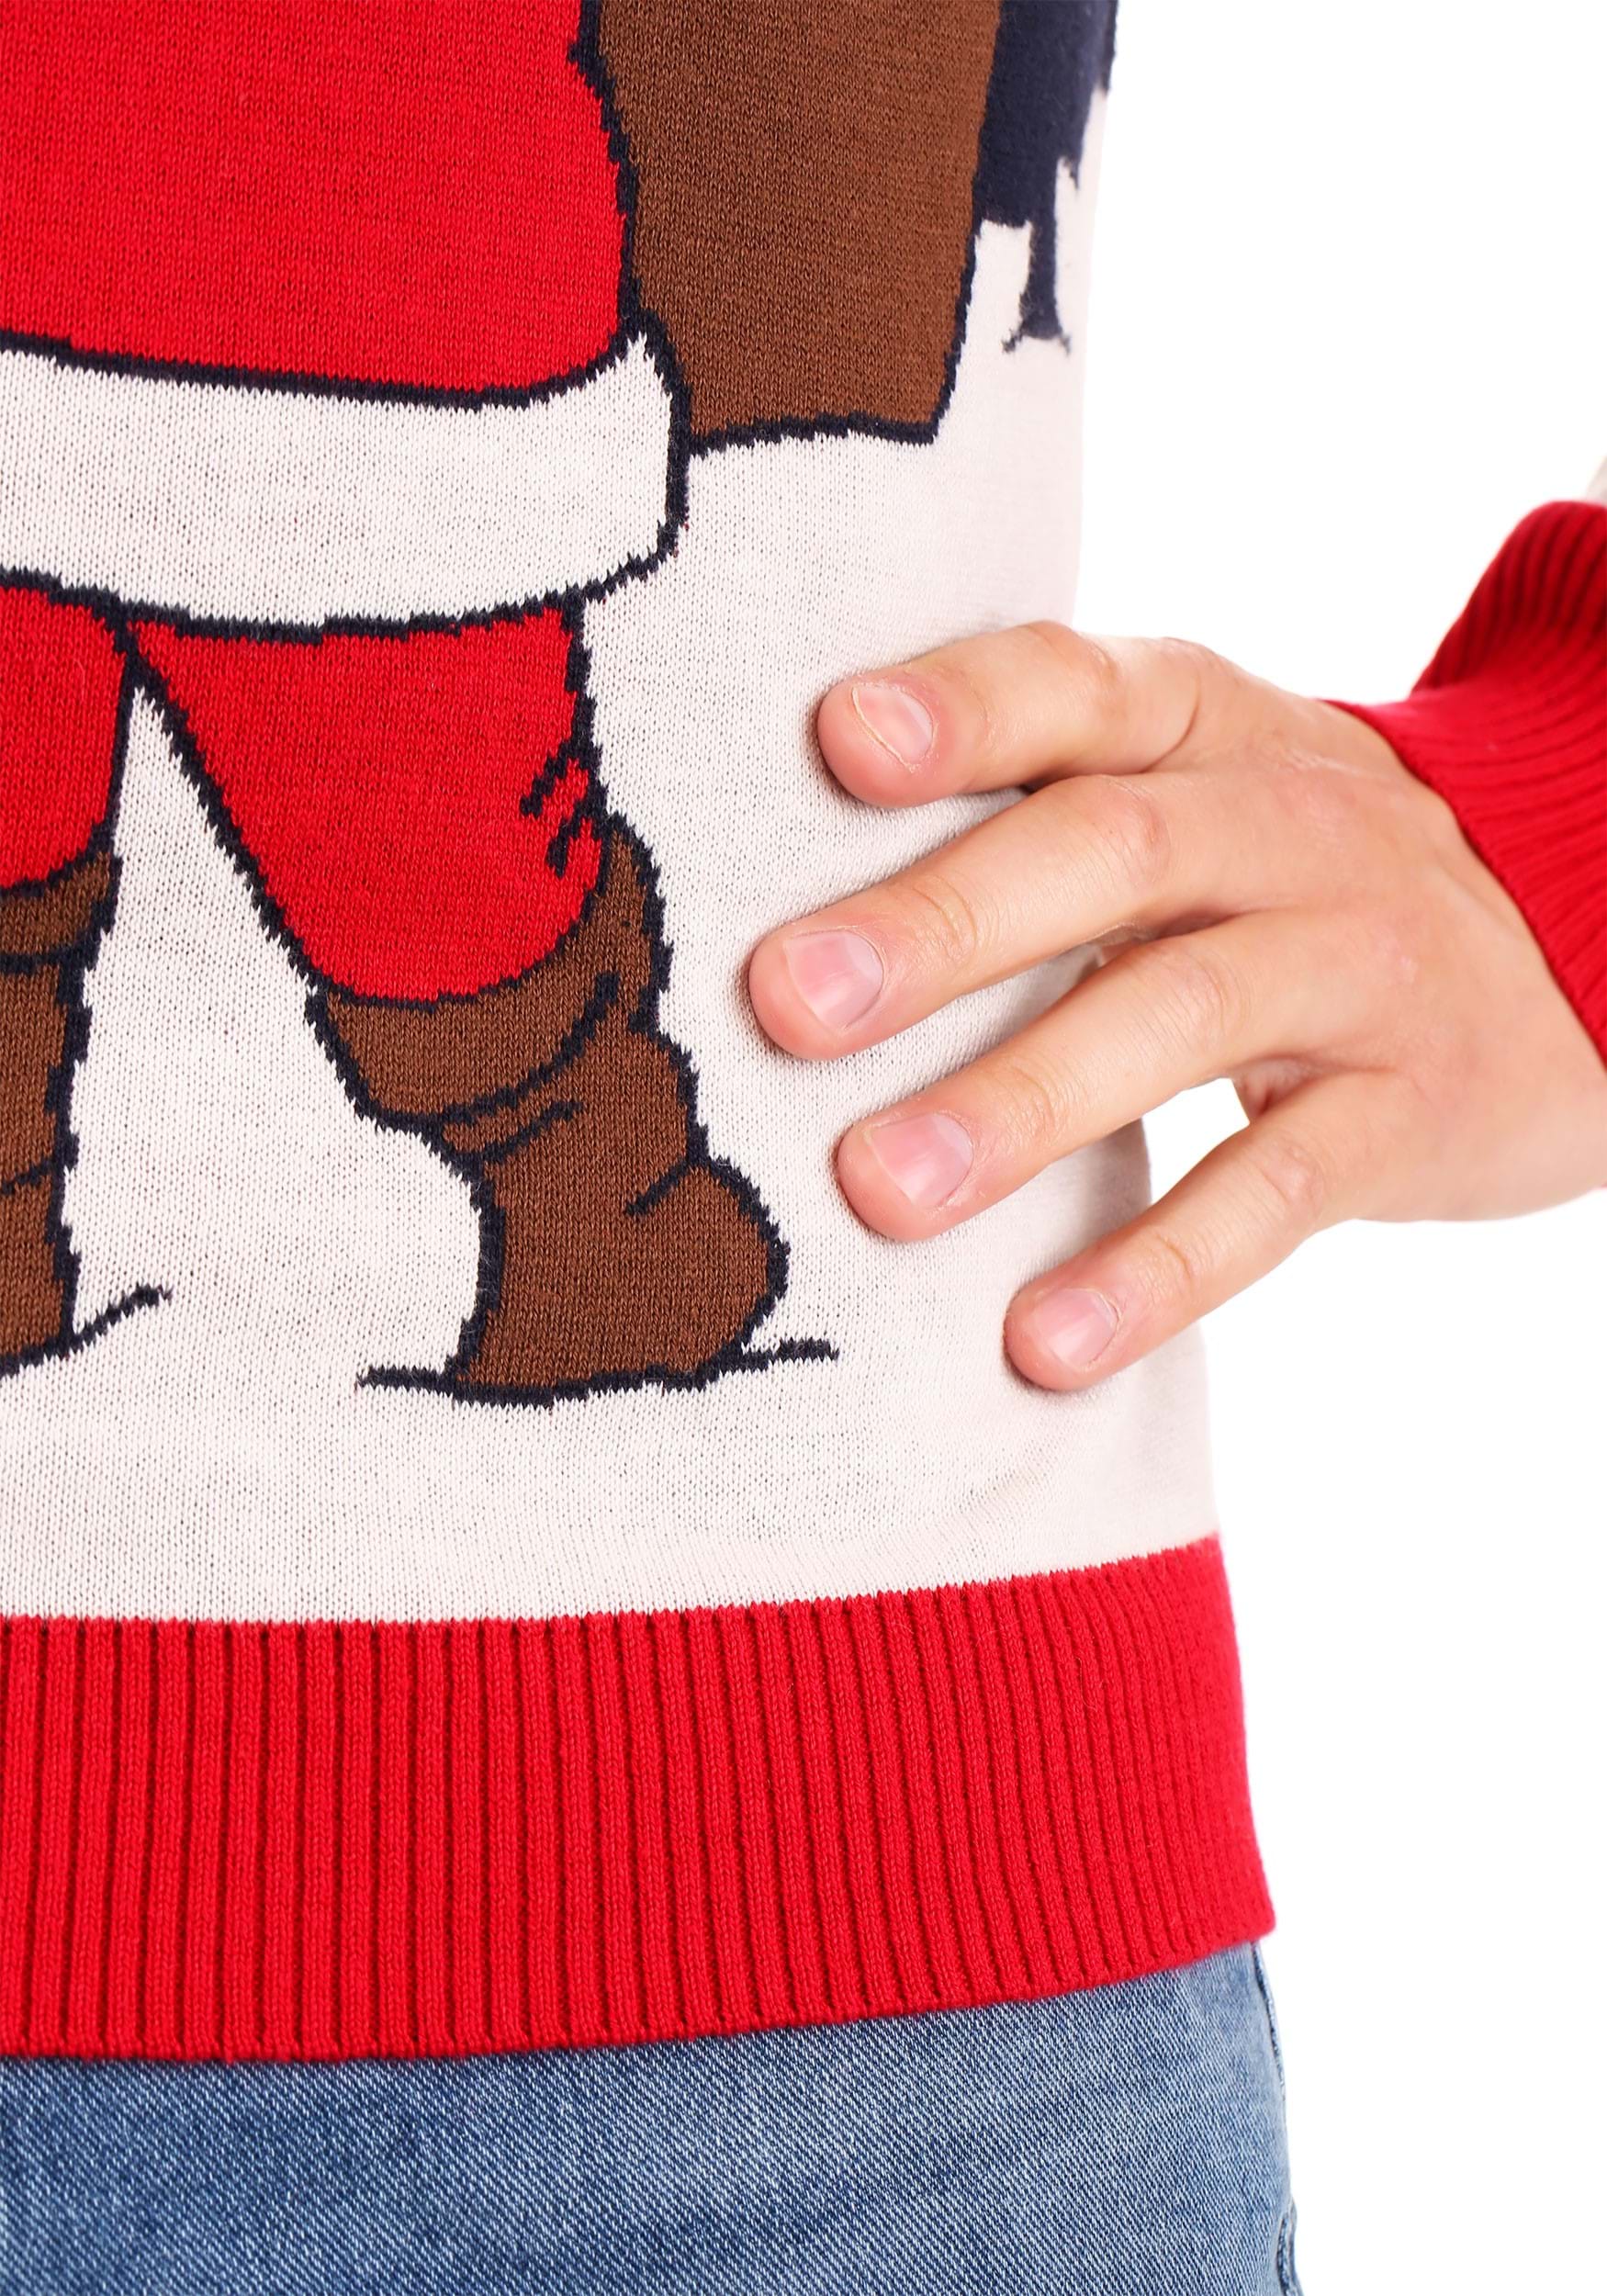 Vintage Santa & Reindeer Adult Ugly Christmas Sweater